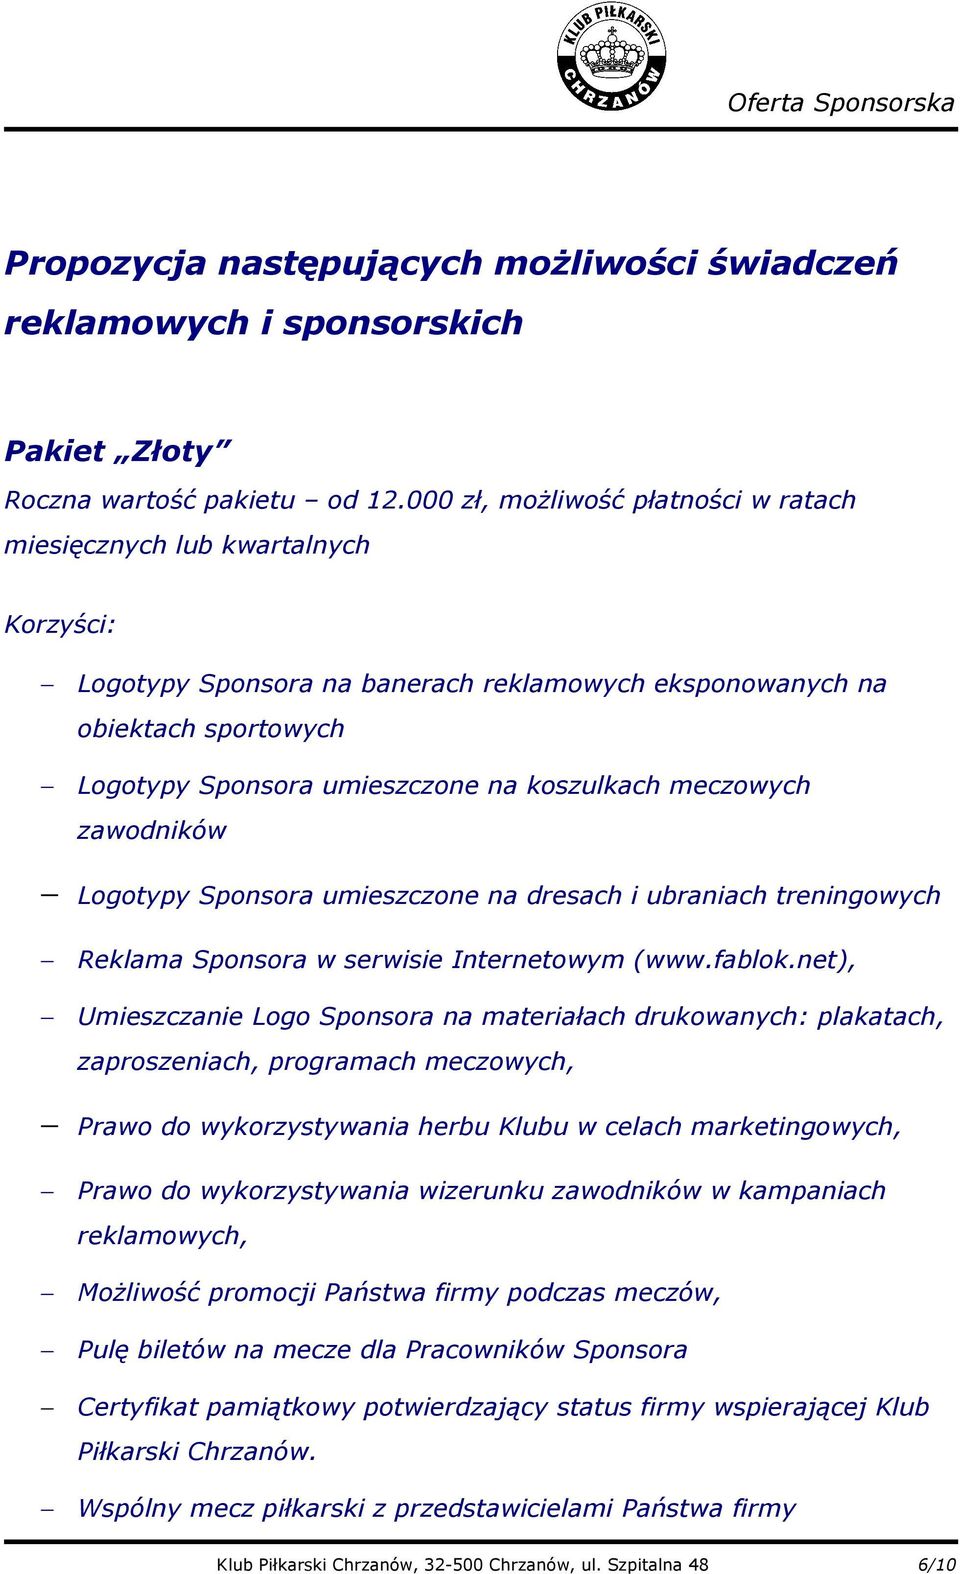 meczowych zawodników Logotypy Sponsora umieszczone na dresach i ubraniach treningowych Reklama Sponsora w serwisie Internetowym (www.fablok.